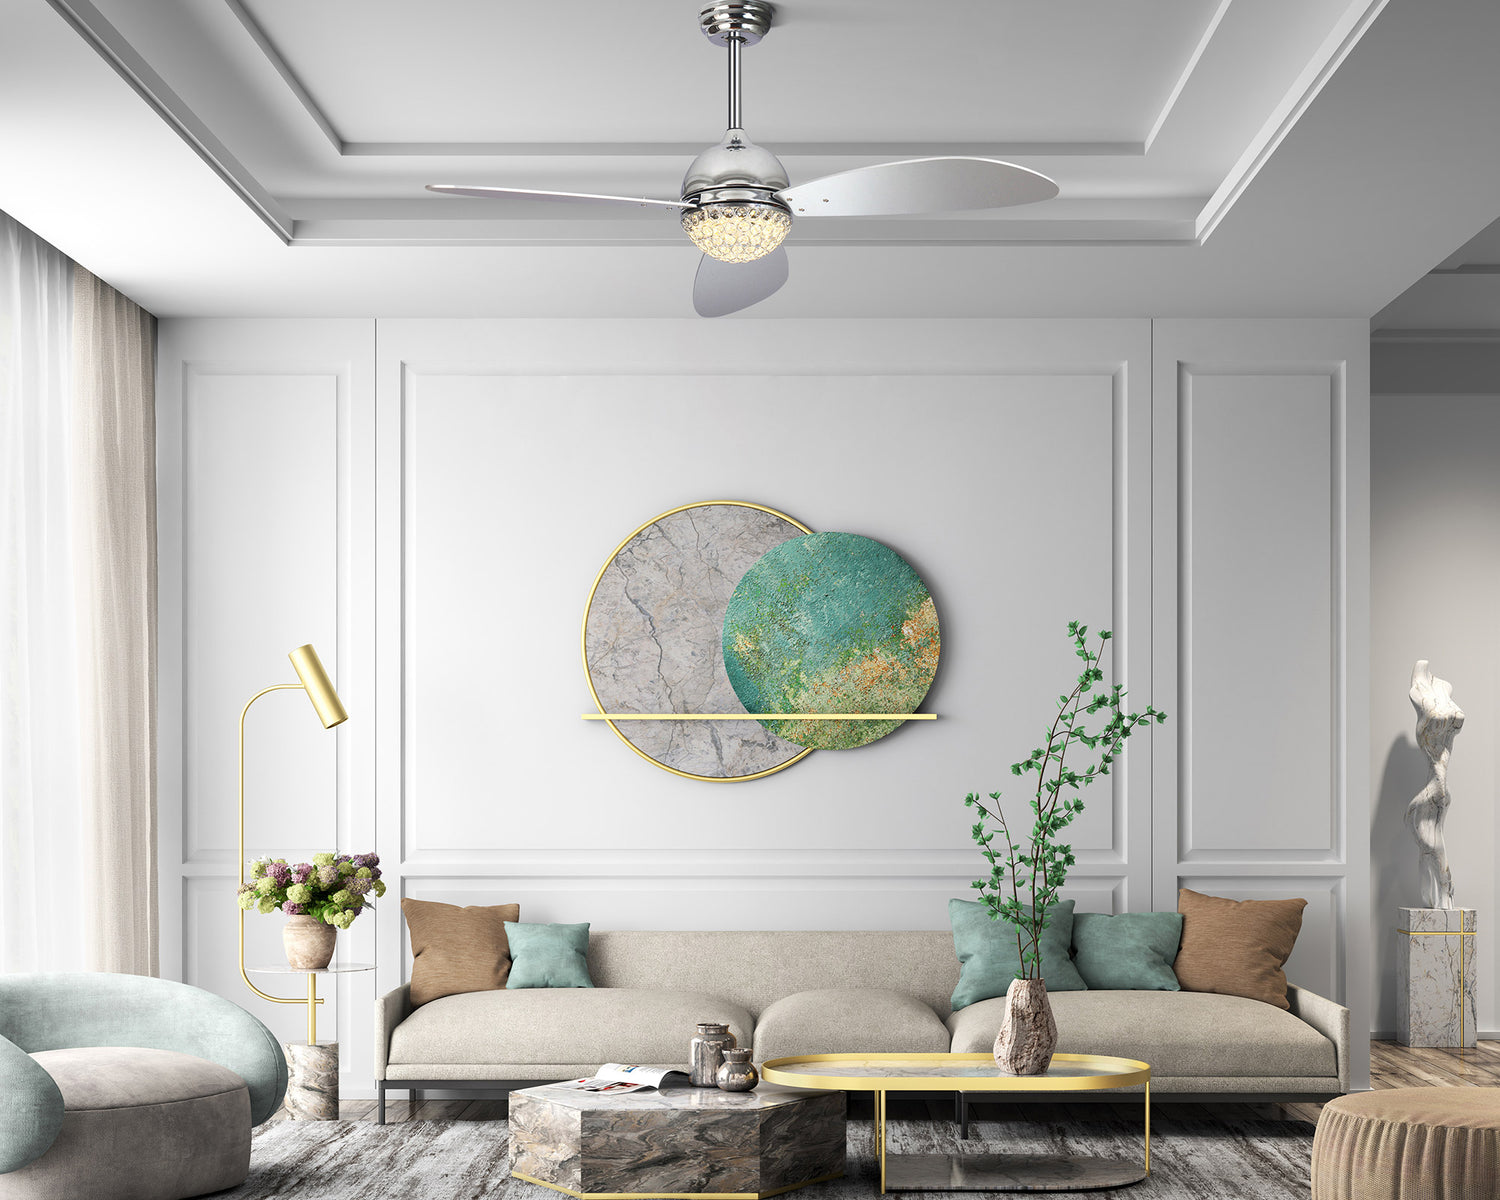 Smafan-smart-luxury-ceiling-fan